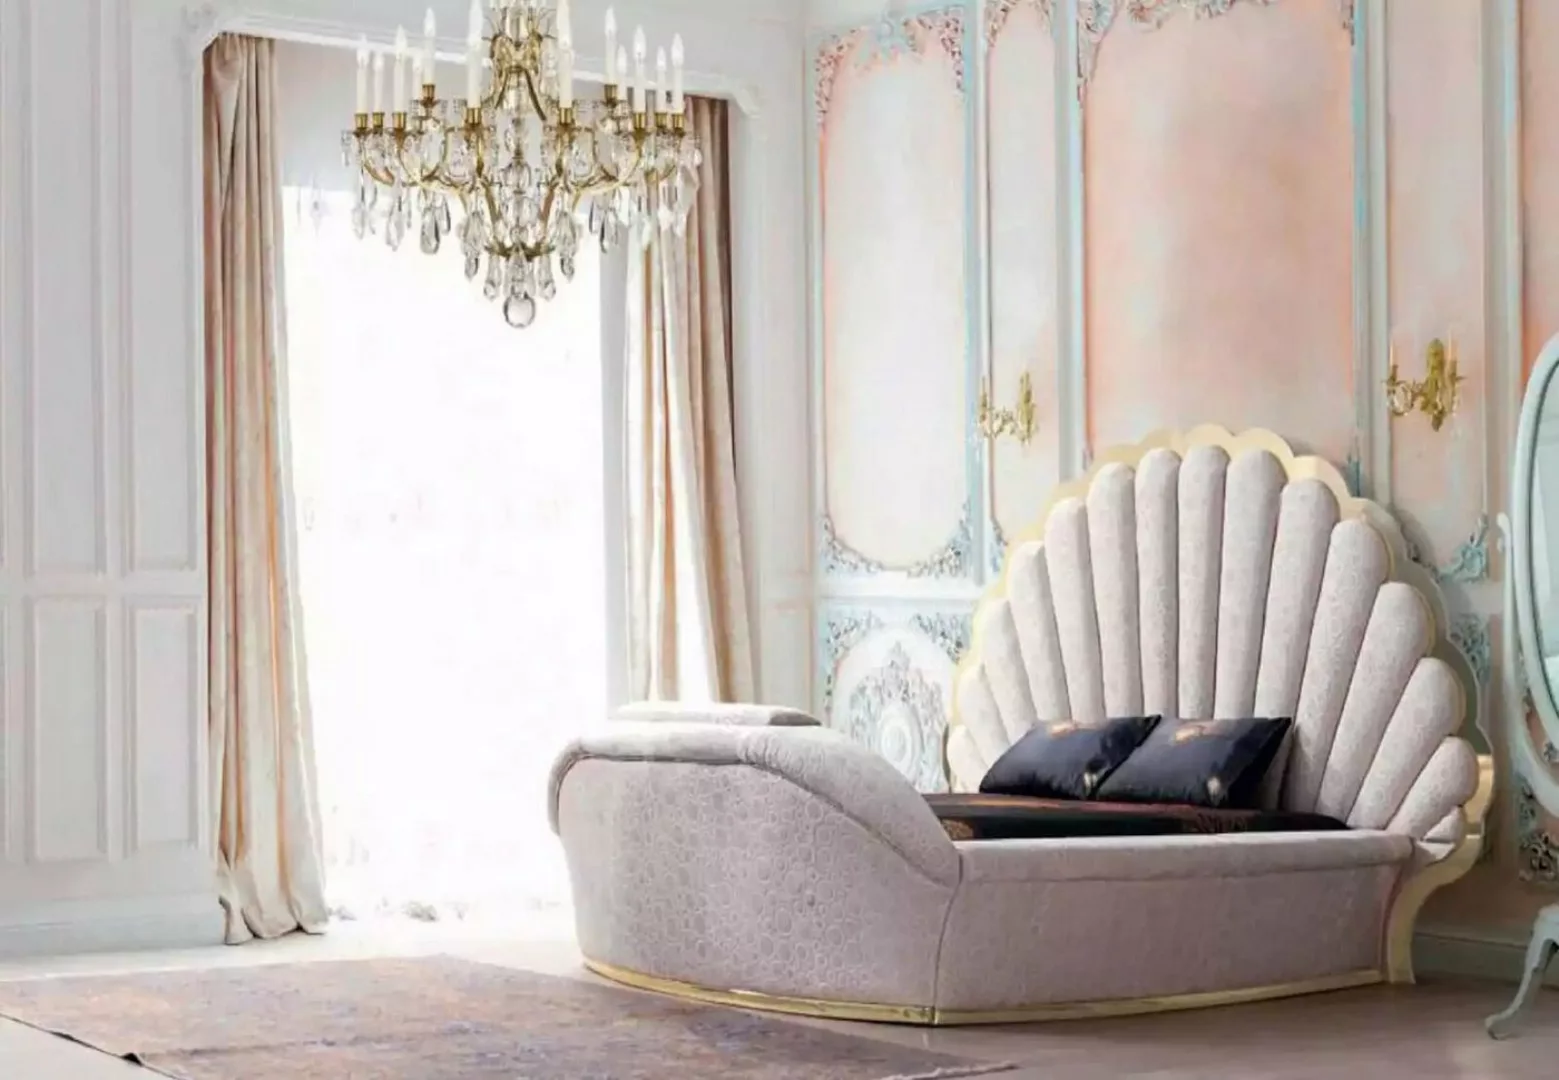 JVmoebel Bett Königliches Bett Luxus Betten Möbel Schlafzimmer Einrichtung günstig online kaufen